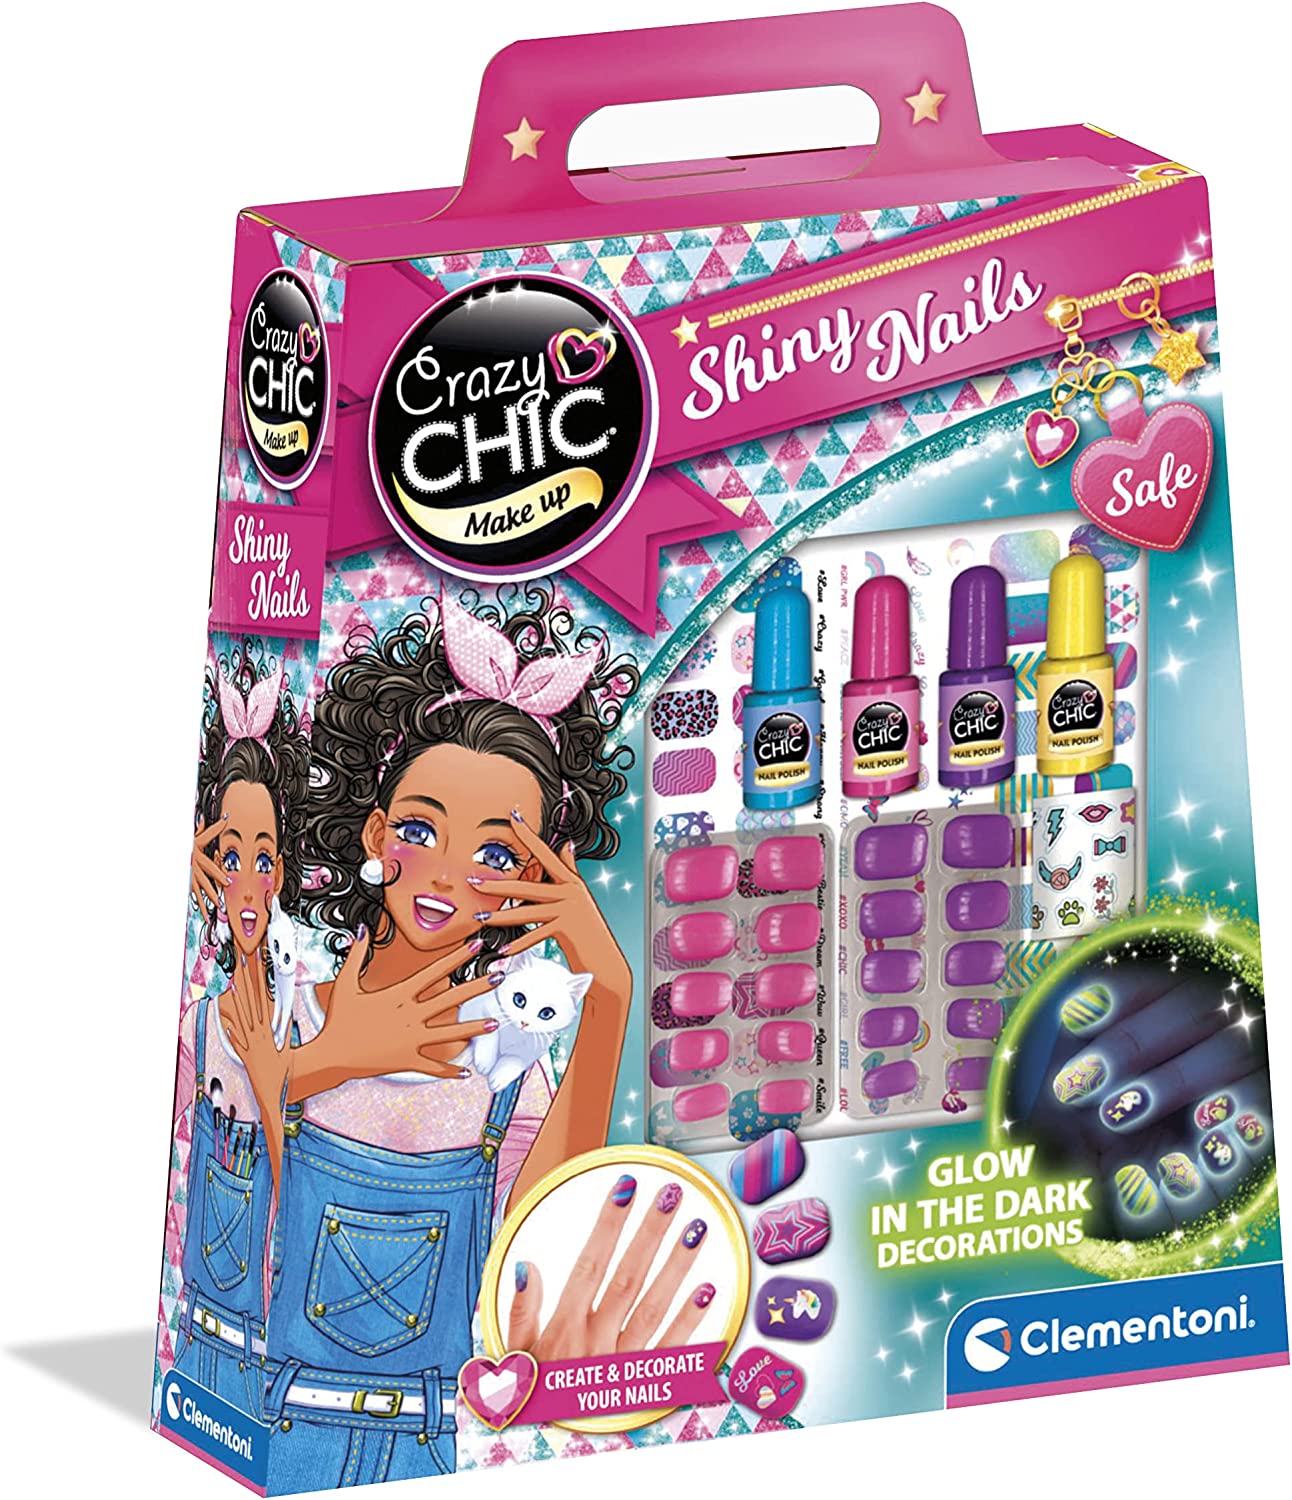 Clementoni - Crazy Chic - Shiny Nails - Kit finte, Set Bambina 6 Anni  Decora Unghie Fluorescenti, Trousse smalti, Regalo per Man